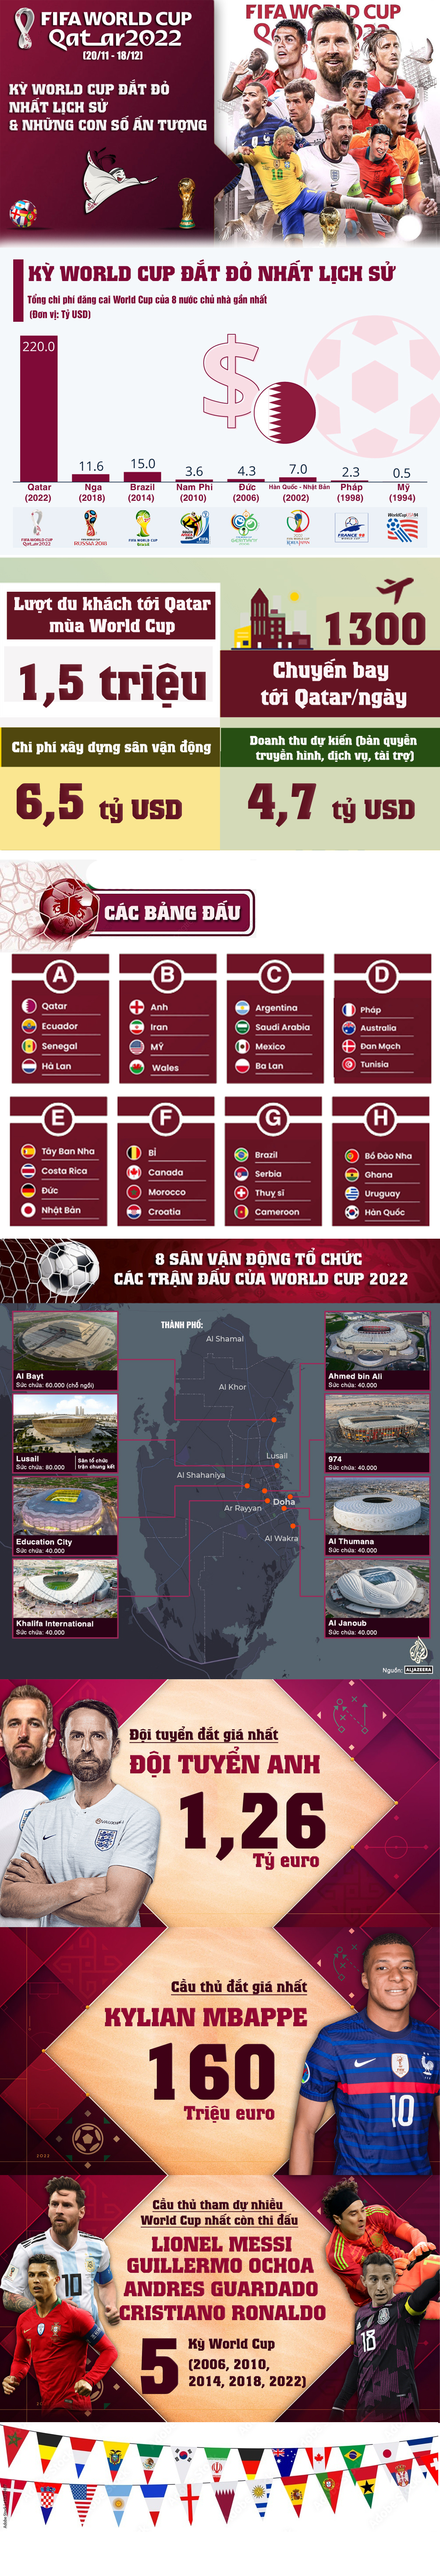 Khai mạc World Cup 2022 đắt đỏ nhất lịch sử: 220 tỷ USD & những con số choáng ngợp - 1